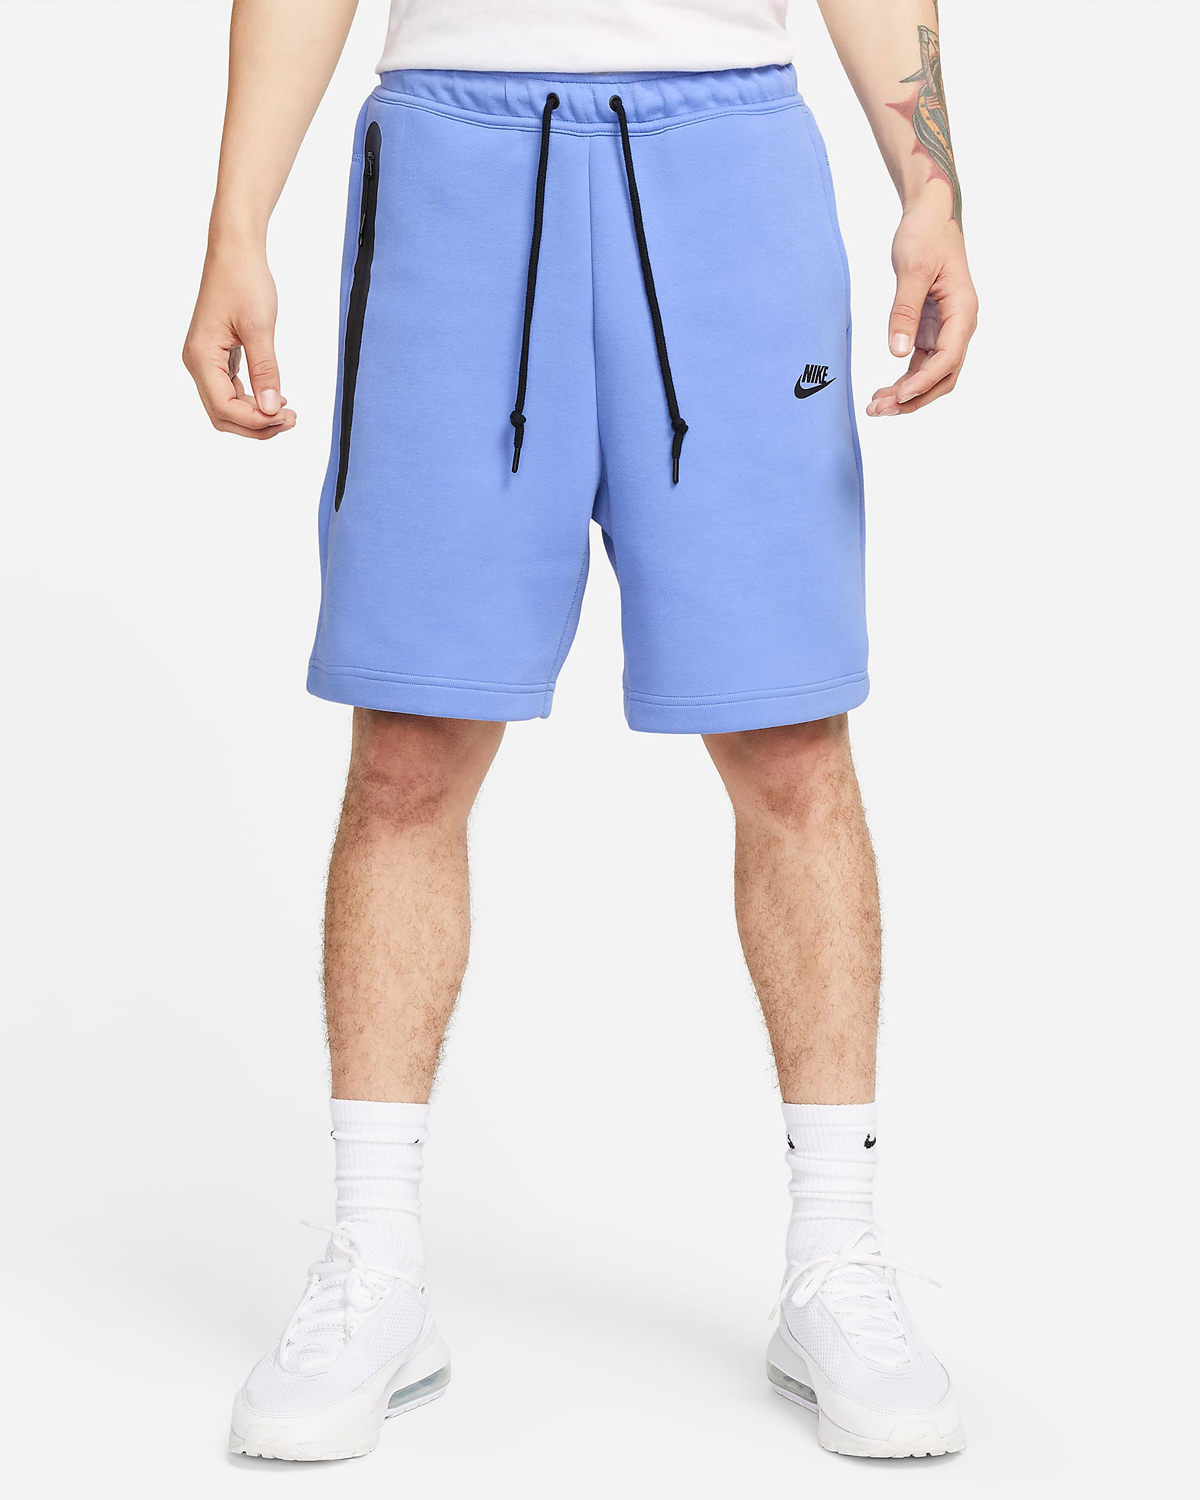 Nike-Tech-Fleece-Shorts-Polar-Blue-Black